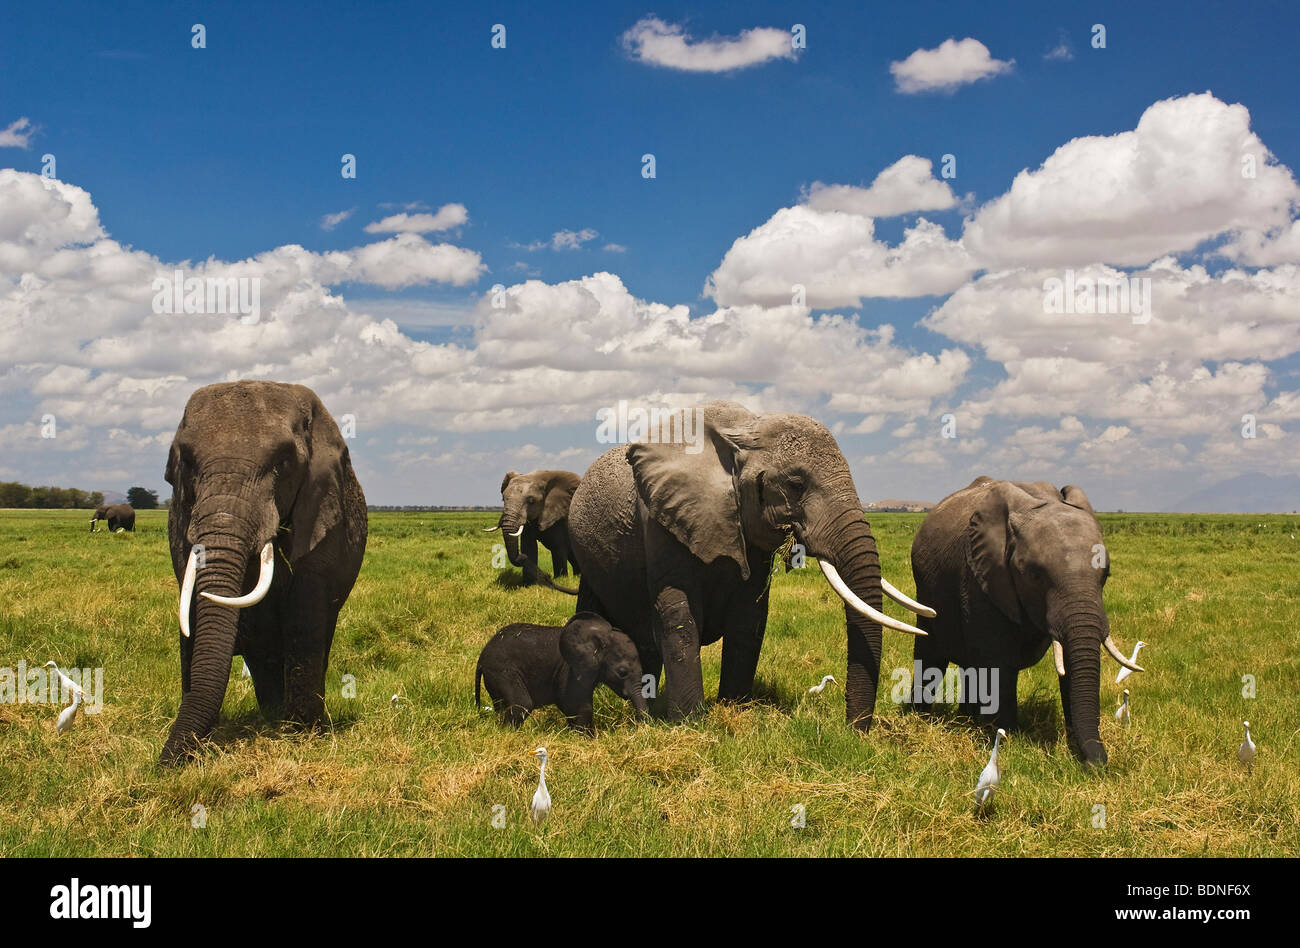 Elephant family (Loxodonta africana) with baby elephant, Amboseli National Park, Kenya Stock Photo